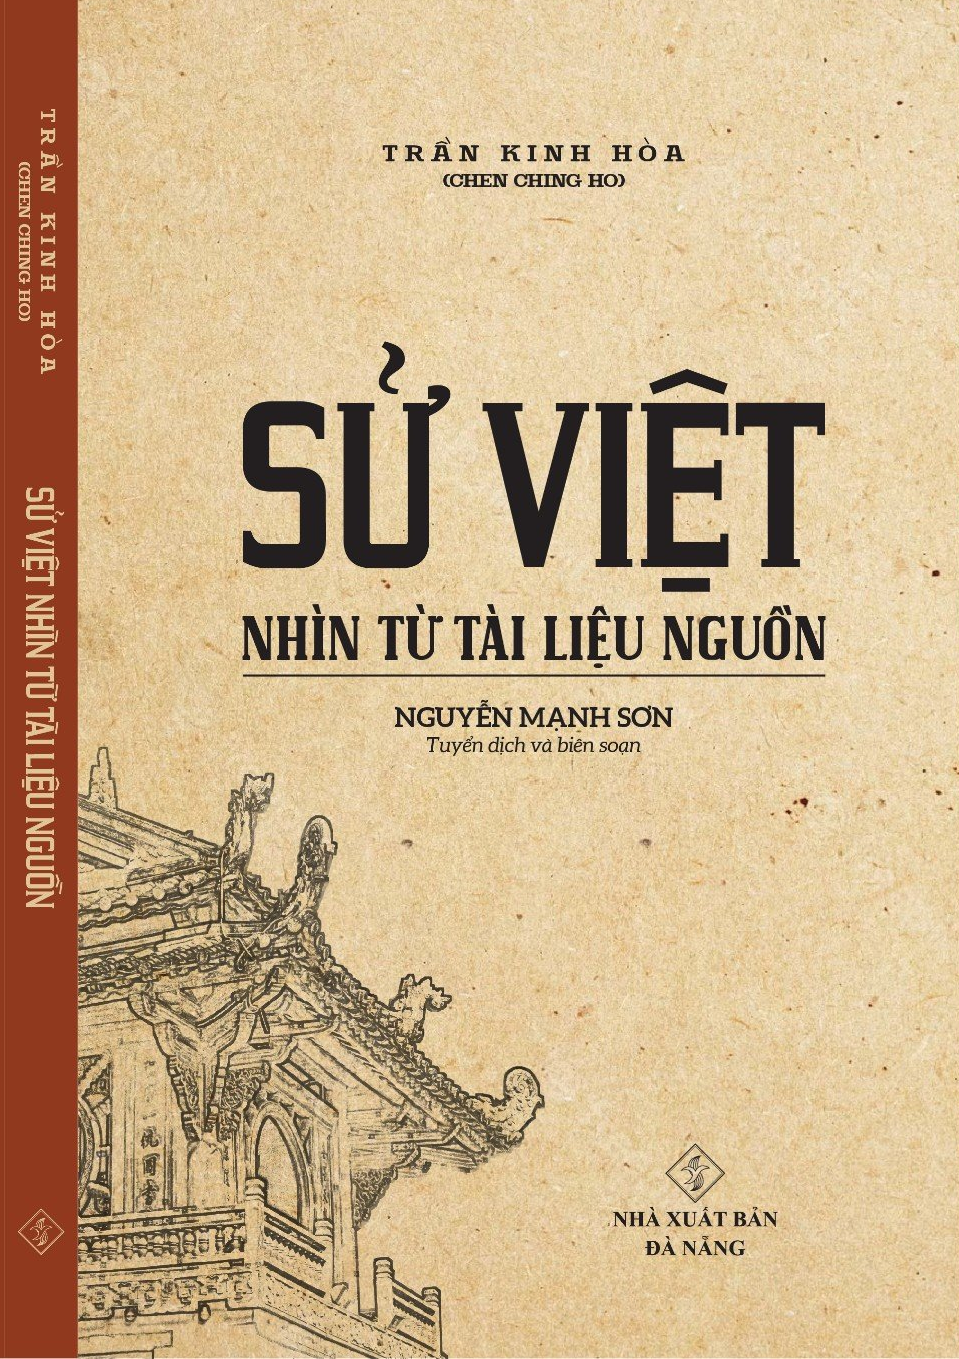 Sử Việt nhìn từ tài liệu nguồn